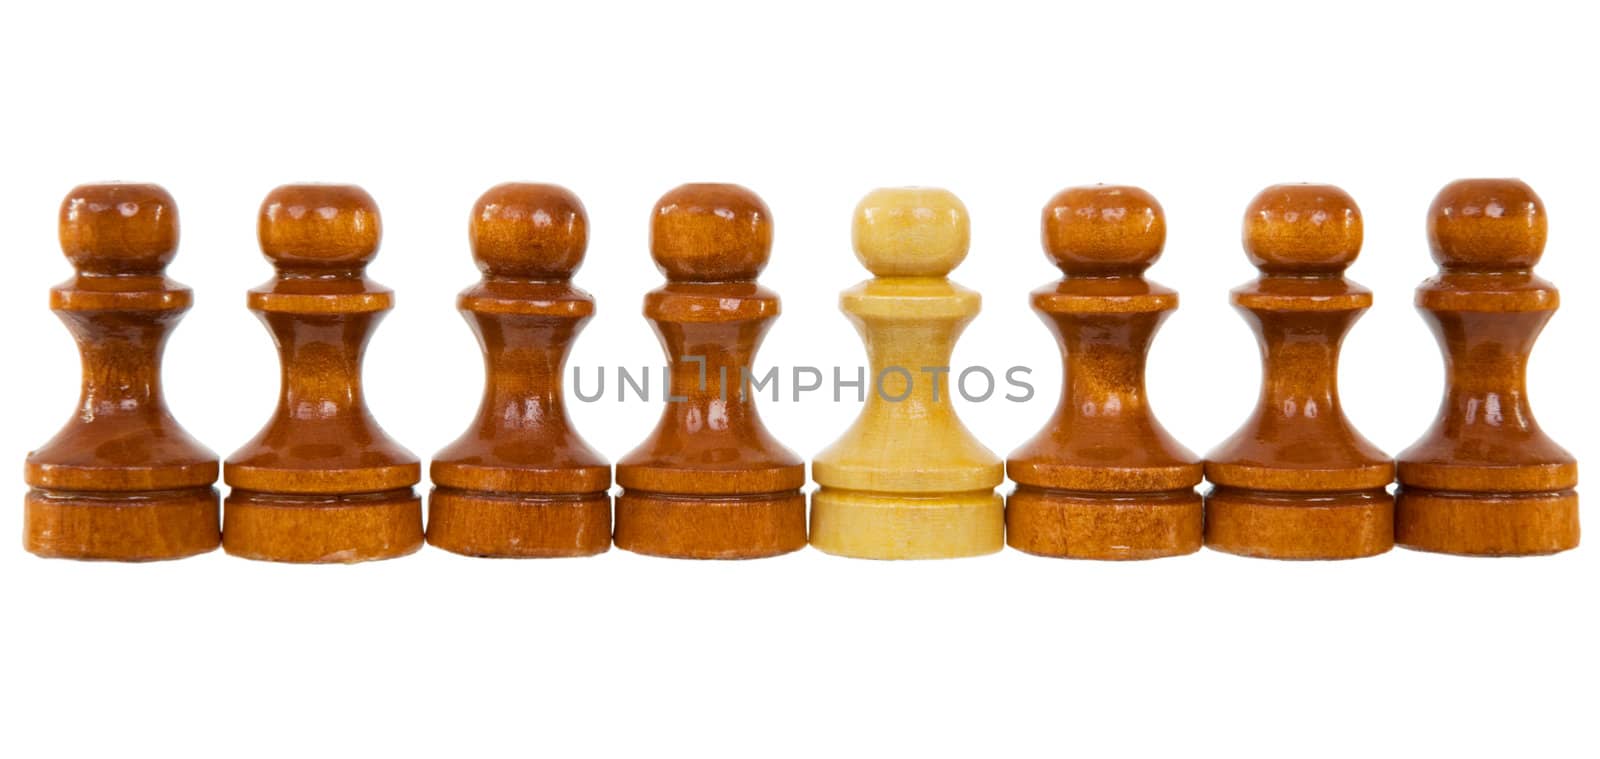 Abreast from wooden dark brown pawns one beige pawn